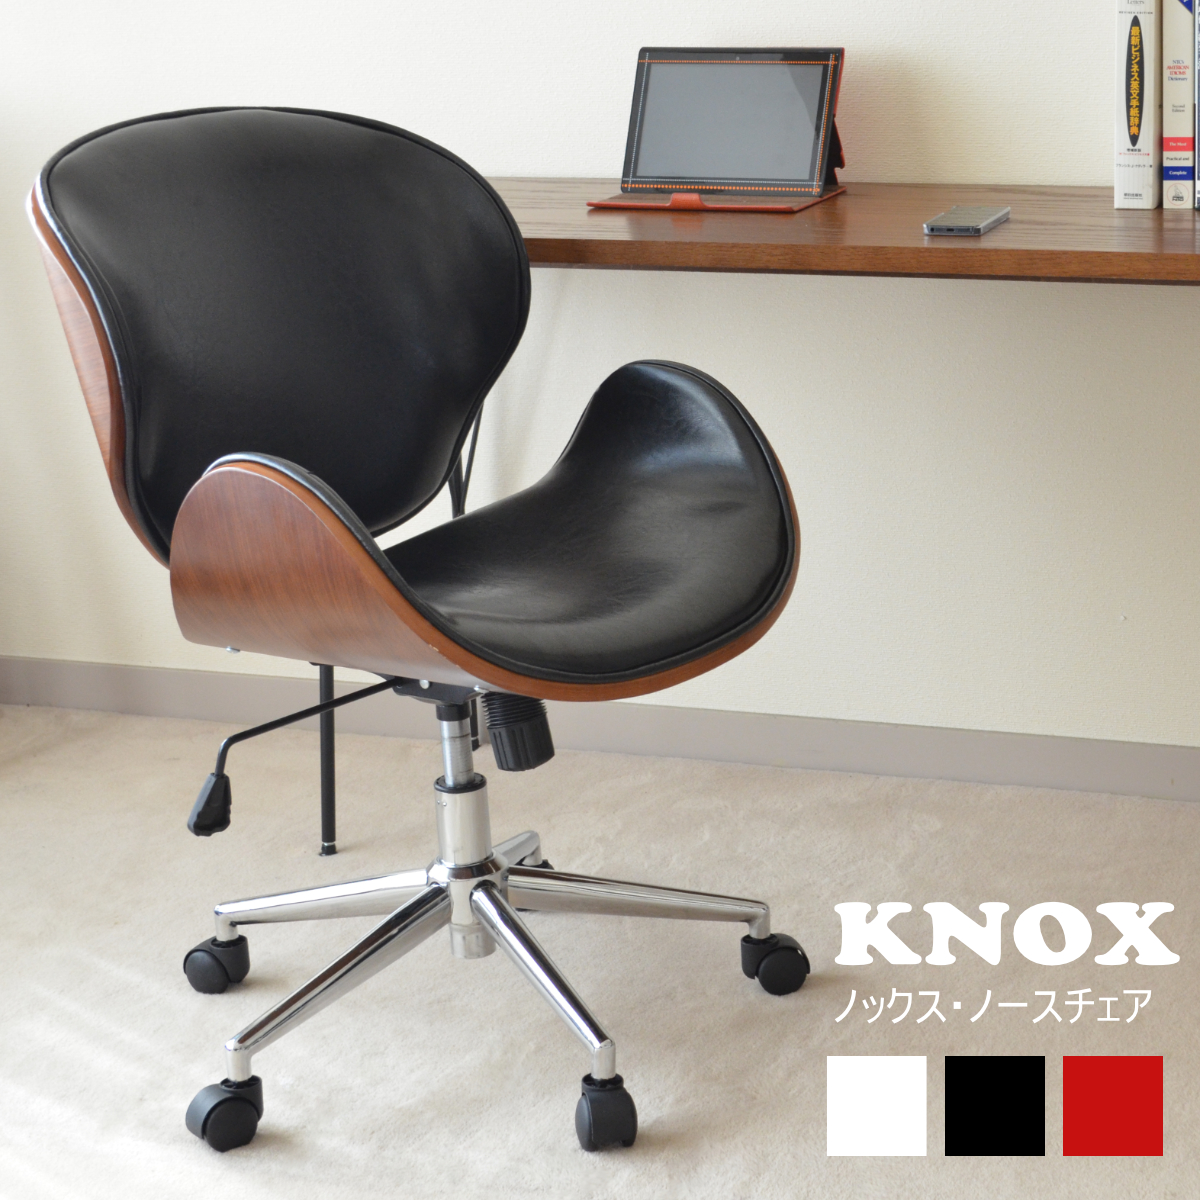  outlet ( коробка загрязнения поэтому ) North стул KNOX( knock s) стул * офис стул * дистанционный *SNC-1314( черный * красный * белый )